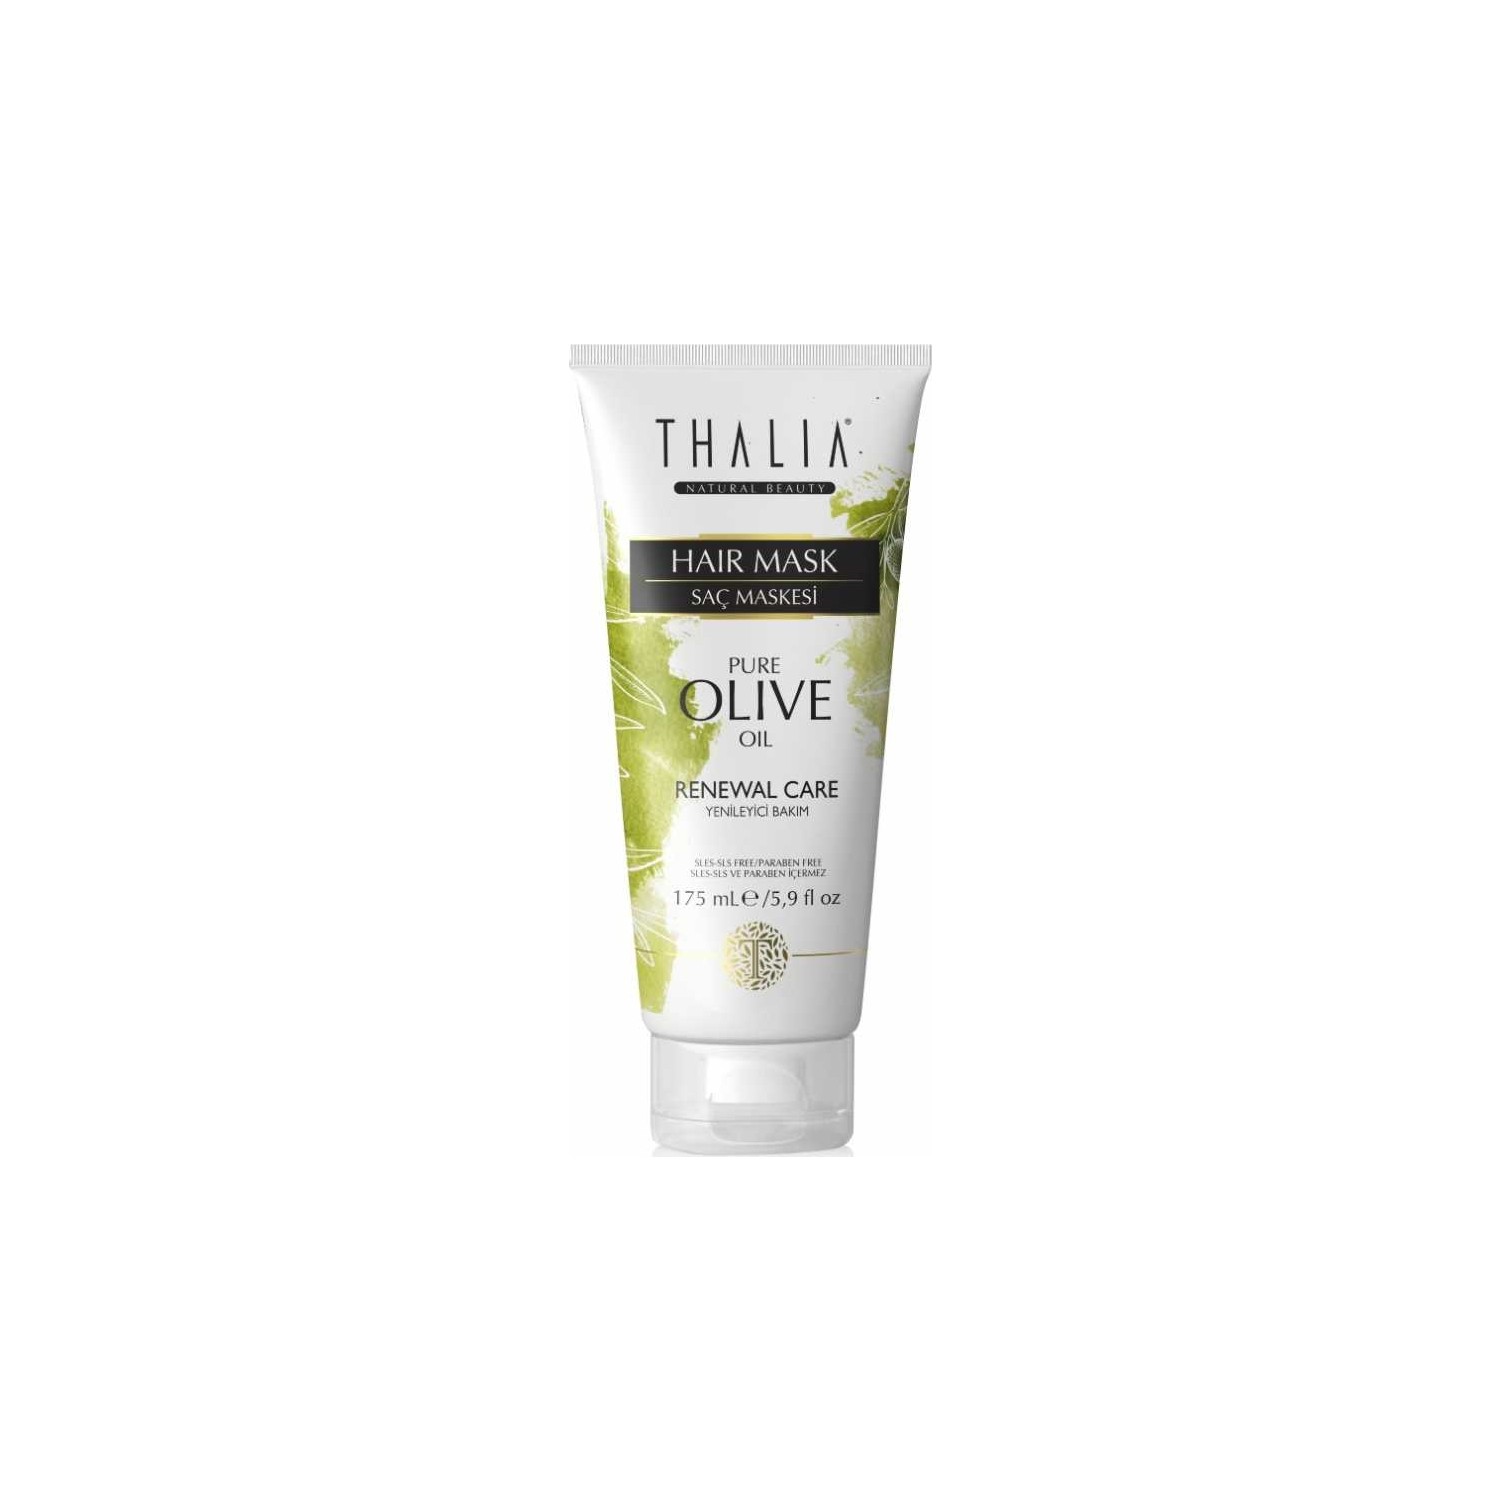 Увлажняющая маска для ухода за волосами Thalia с оливковым маслом, 175 мл цена и фото